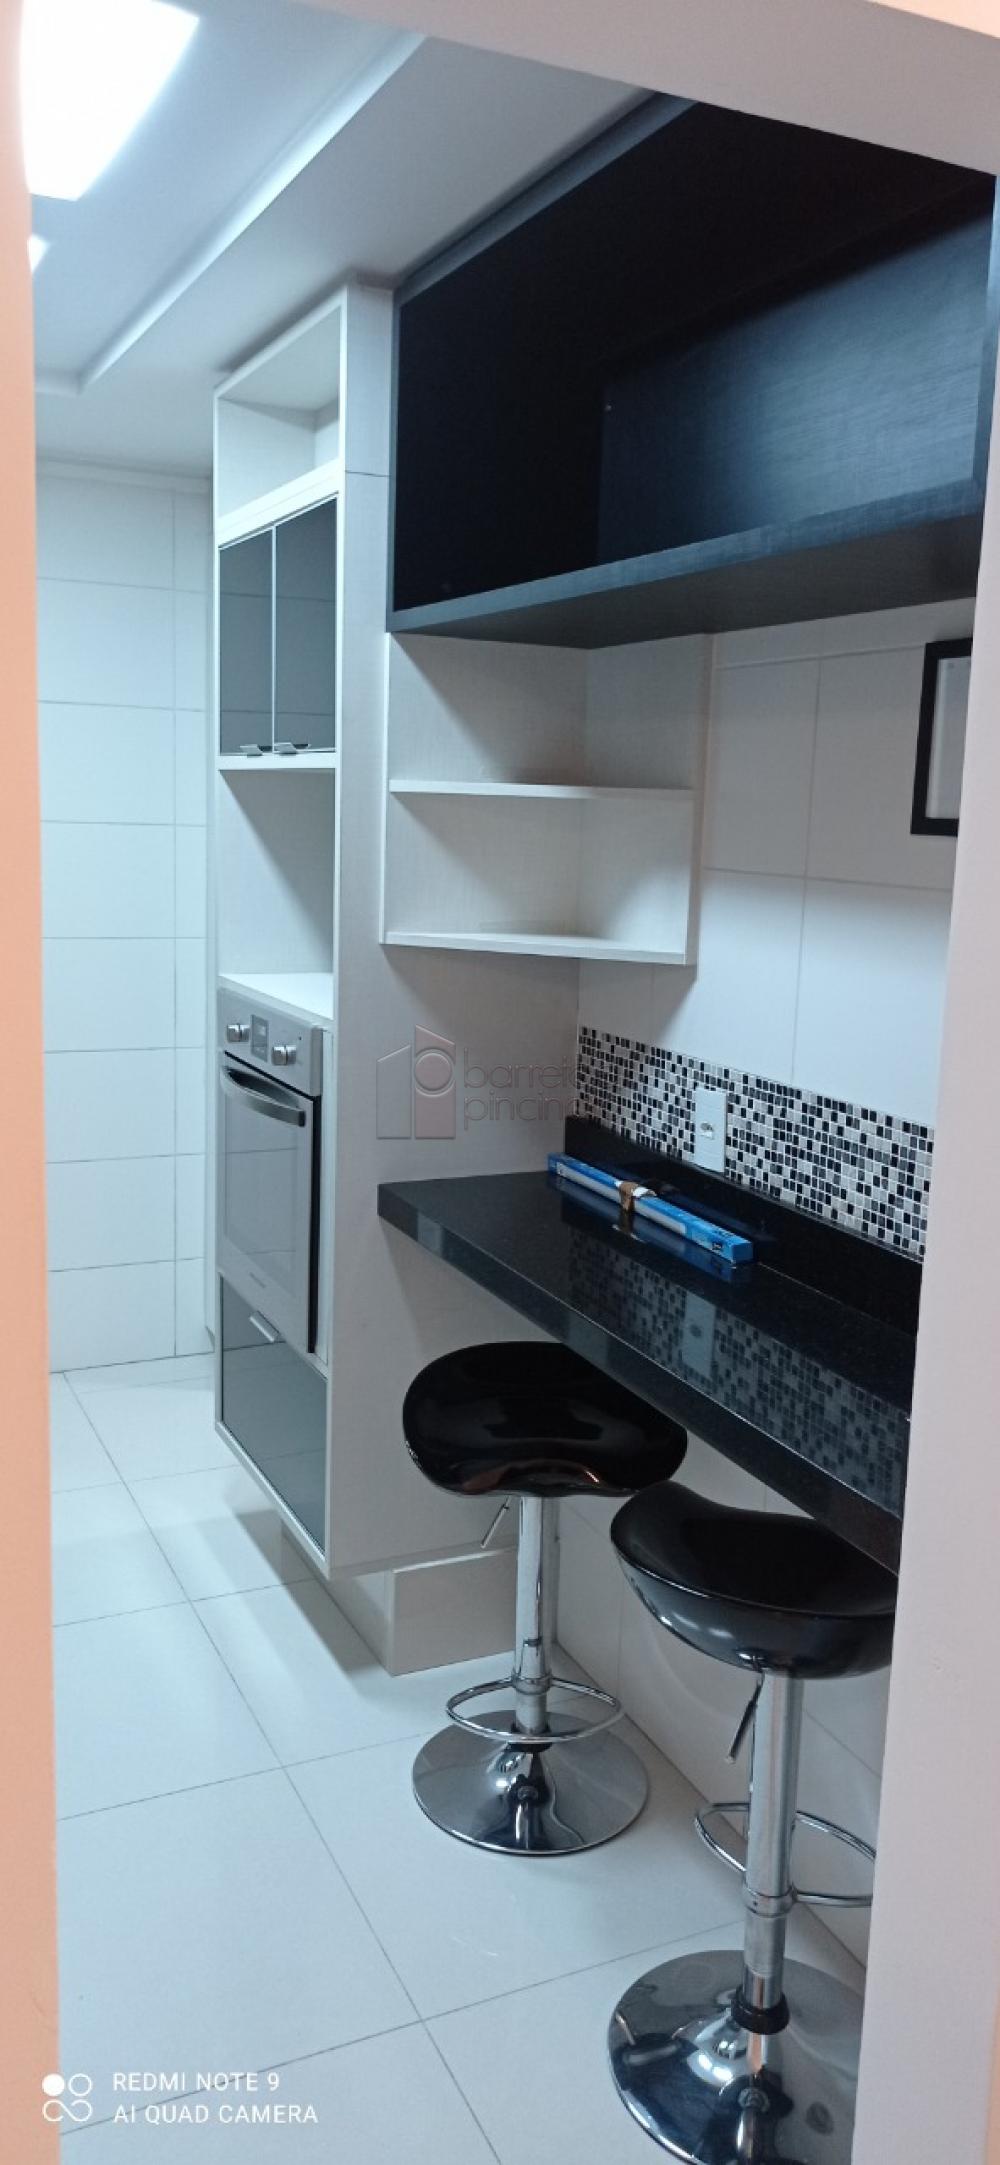 Comprar Apartamento / Padrão em Jundiaí R$ 650.000,00 - Foto 14